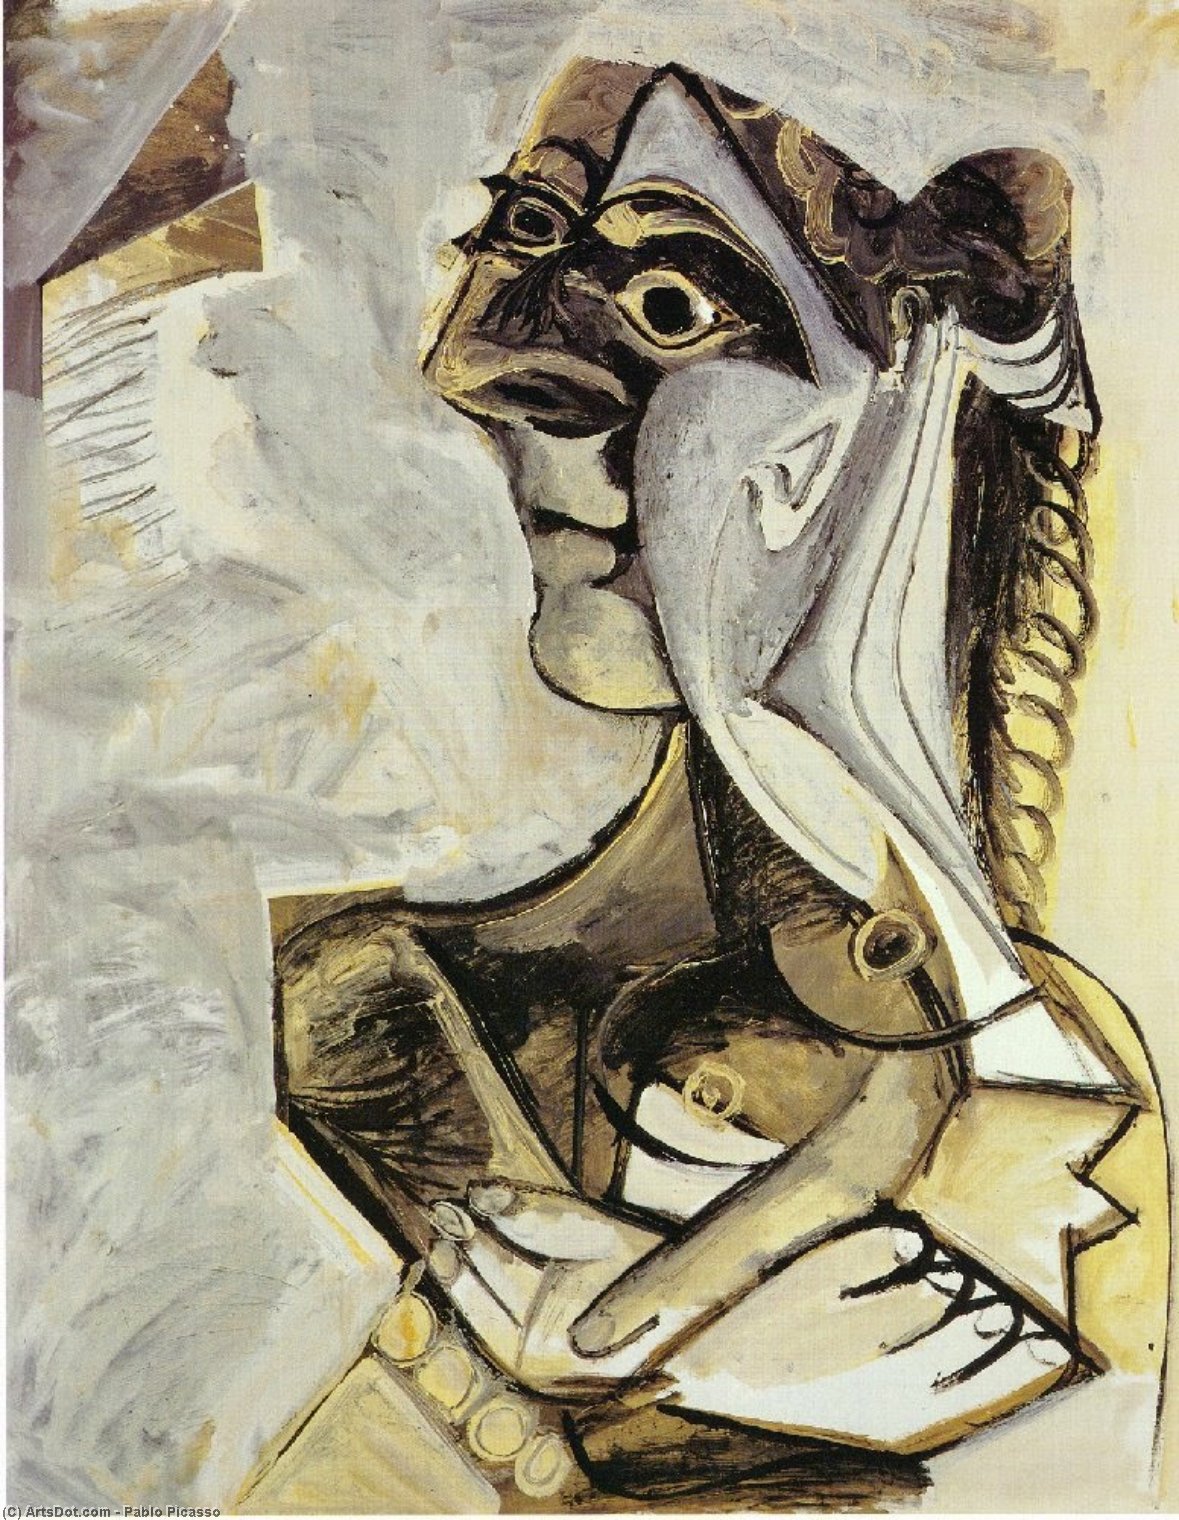 WikiOO.org - Εγκυκλοπαίδεια Καλών Τεχνών - Ζωγραφική, έργα τέχνης Pablo Picasso - Woman with braid